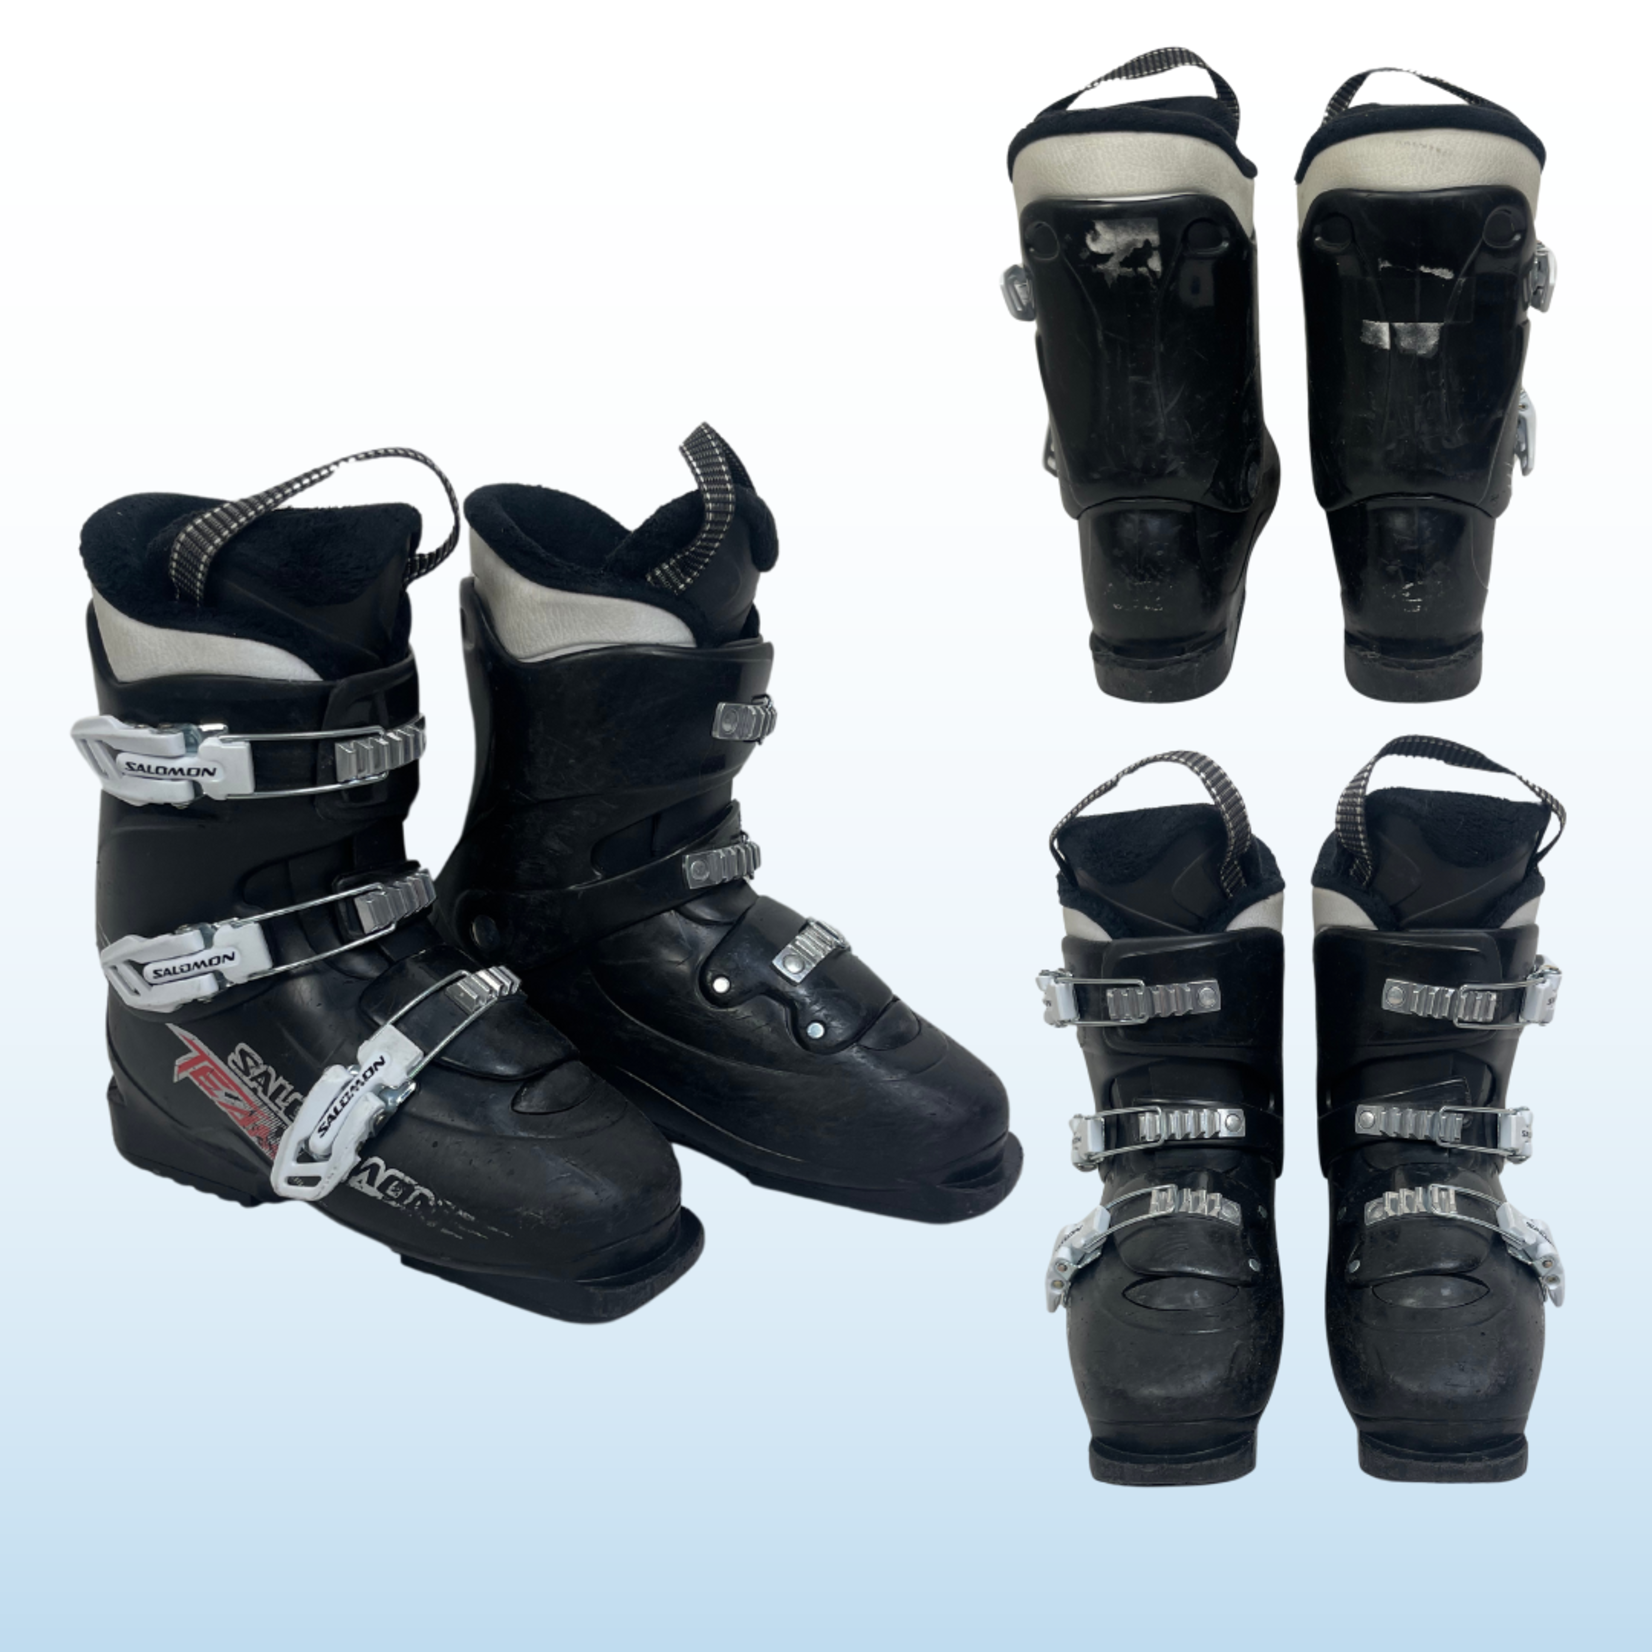 Nordica Nordica Firearrow Team T3 Kids Ski Boots, Size 20.5